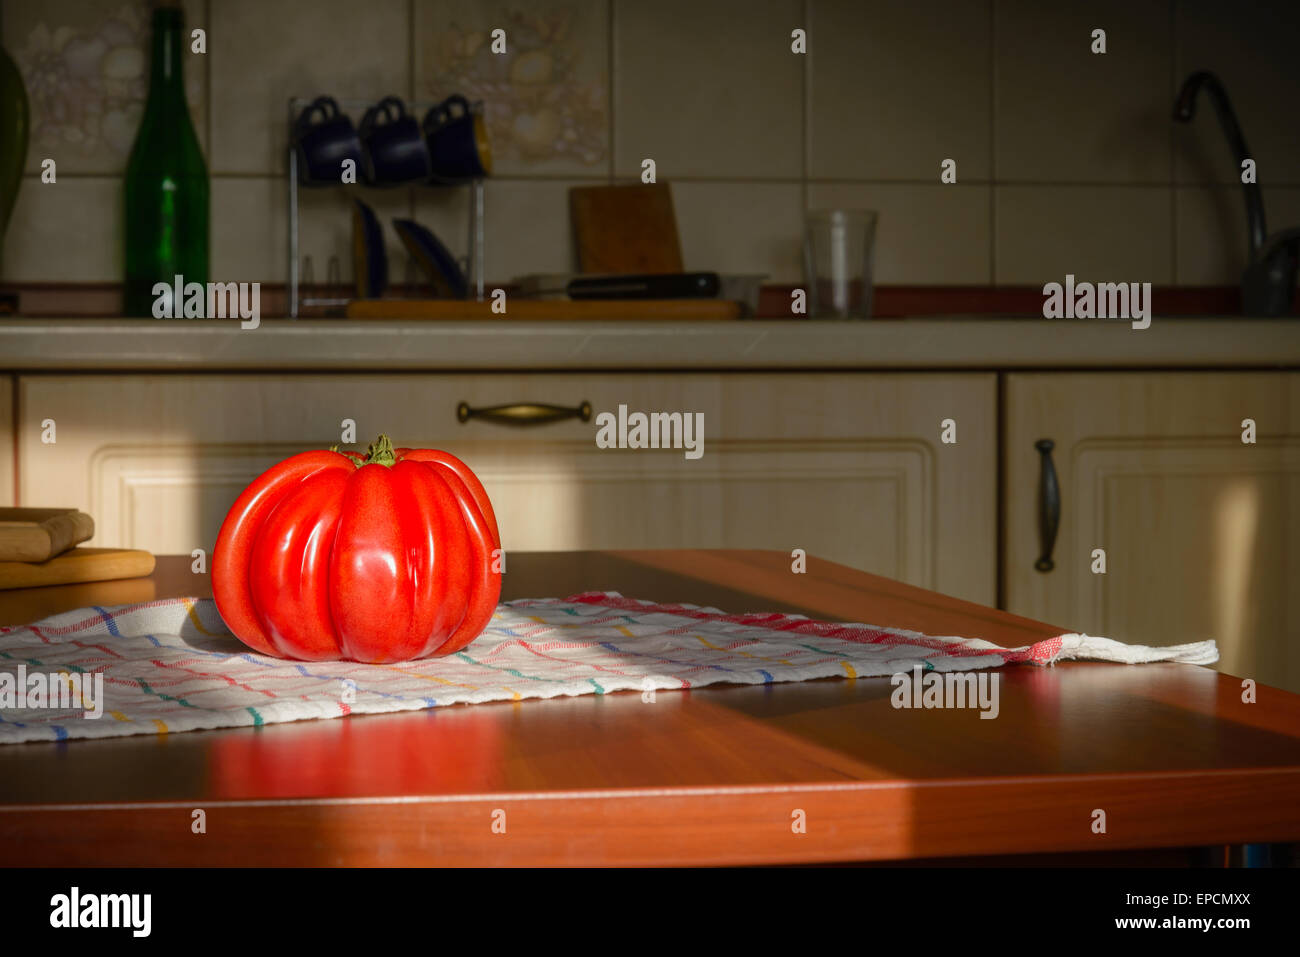 Beef Heart tomato, Olena Ukraina, on the kitchen table illuminated by the morning sunlight Stock Photo